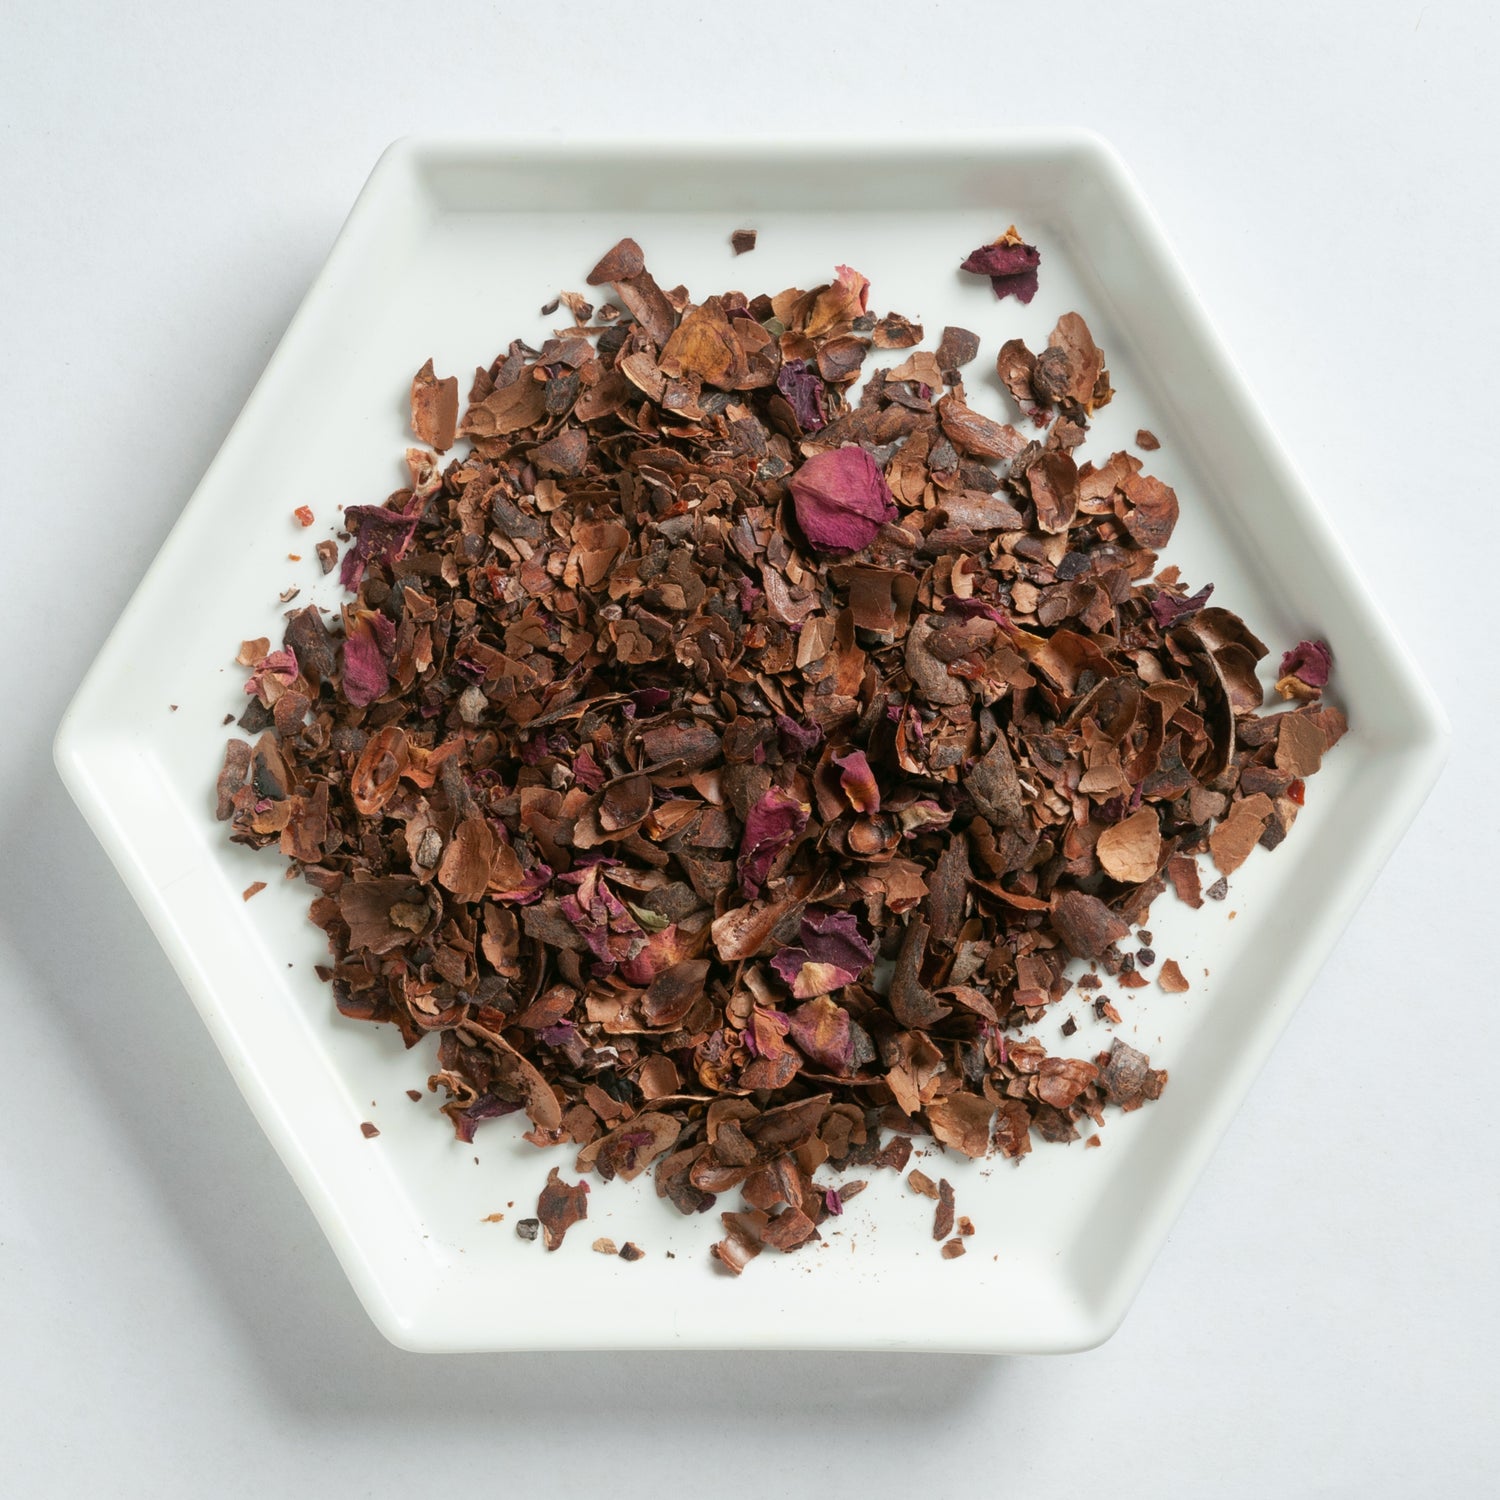 Cacao Rose Tea